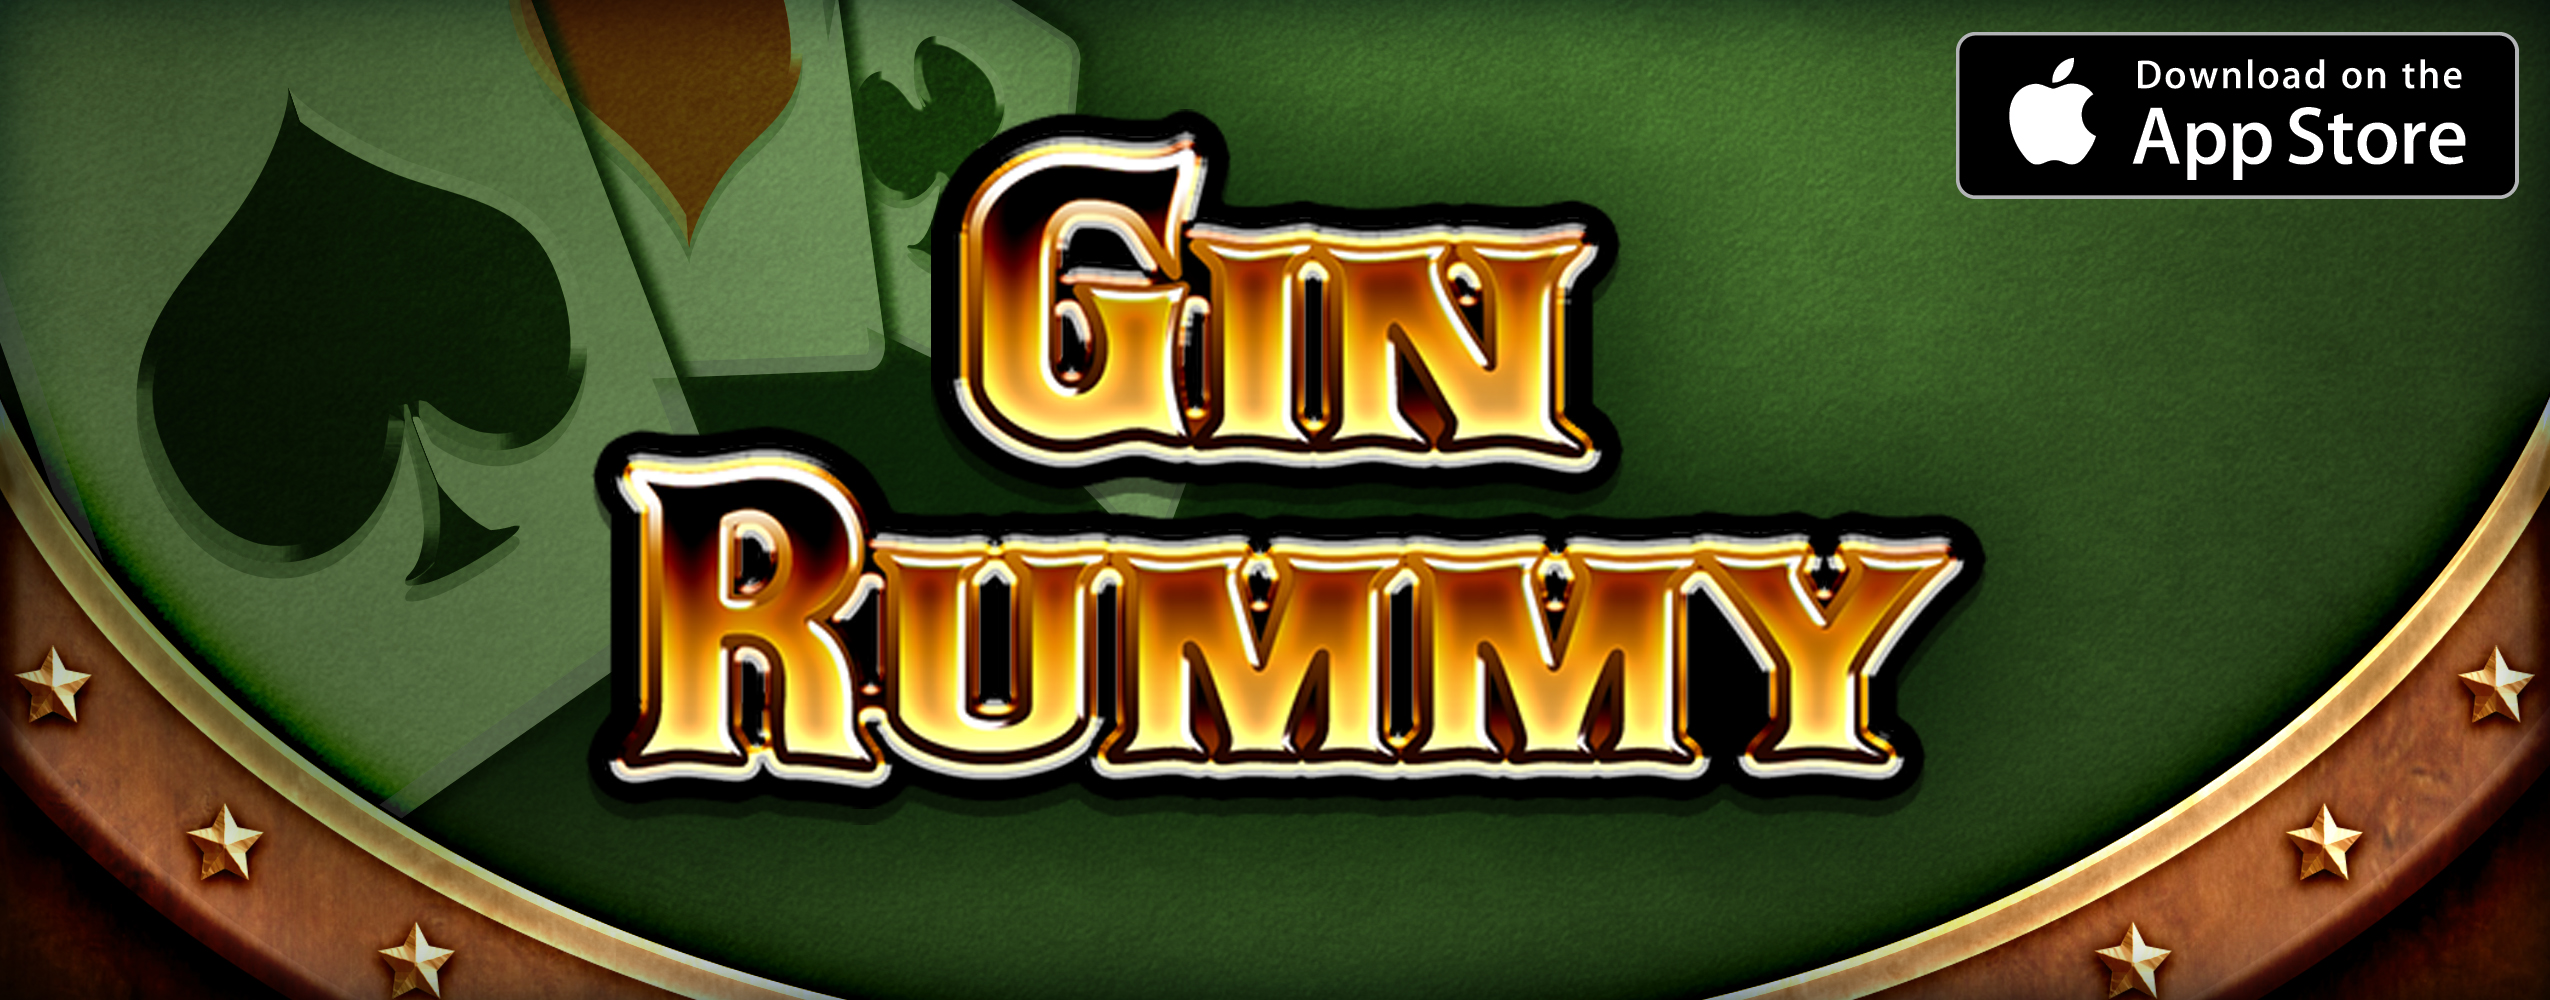 gin rummy app